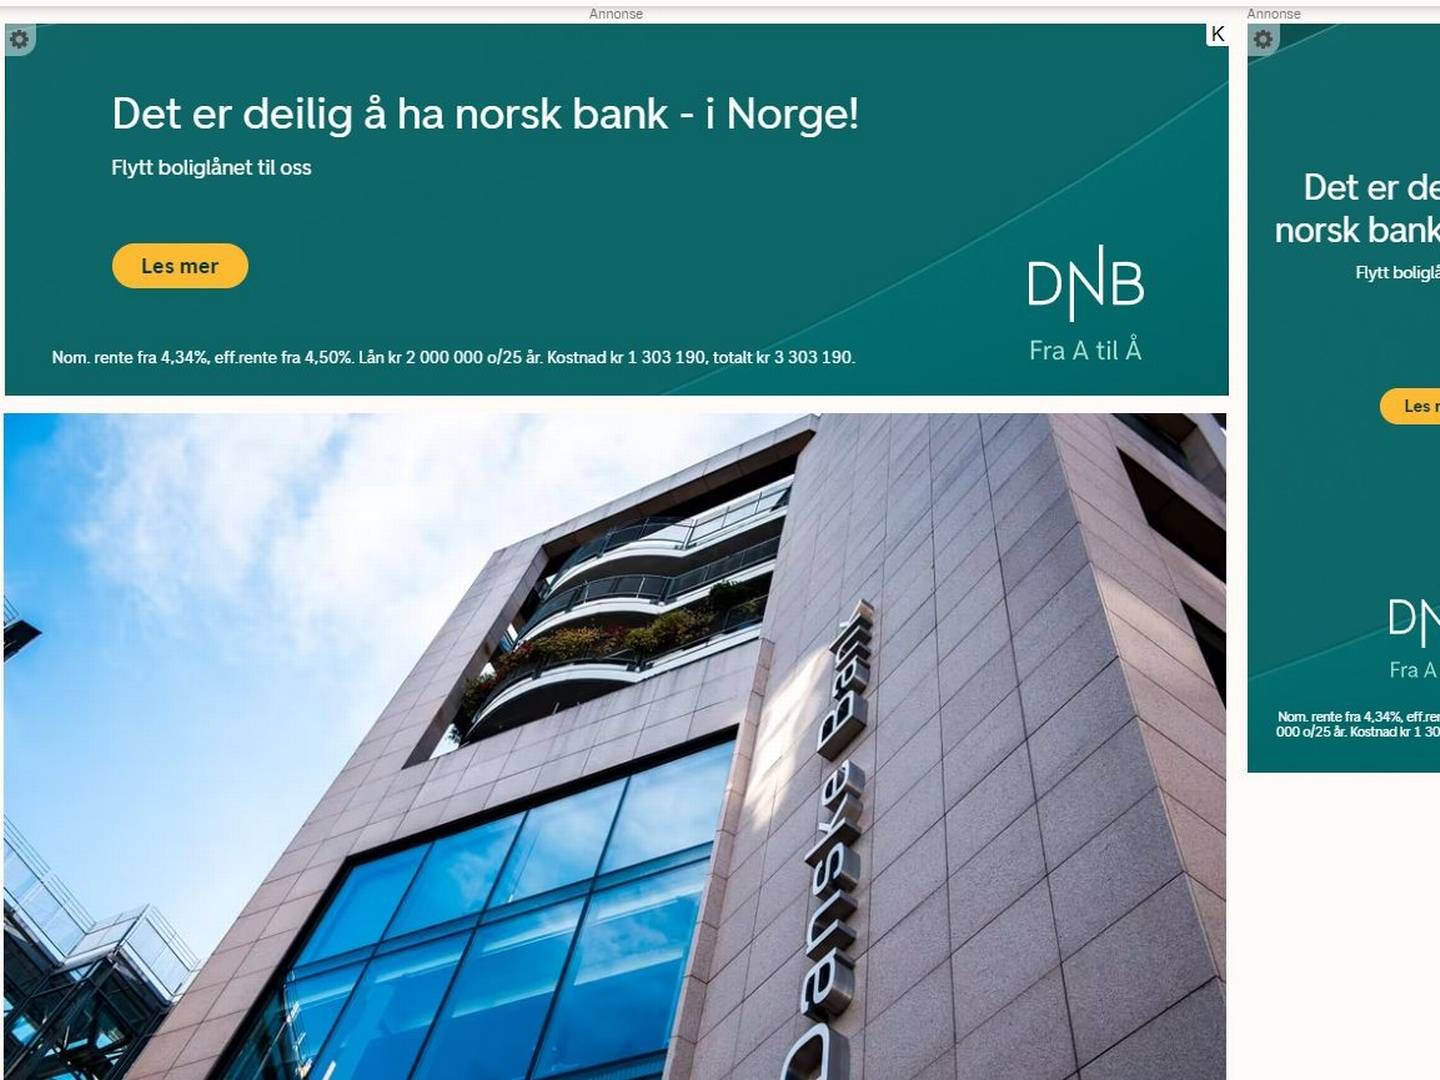 Disse annonsene dukket onsdag opp i nyhetsartikler om at Danske Bank avvikler sin personmarkedsgren i Norge. Danske Bank er den tredje største personmarkedsbanken i Norge, målt i utlånsvolum. | Foto: Skjermbilde E24.